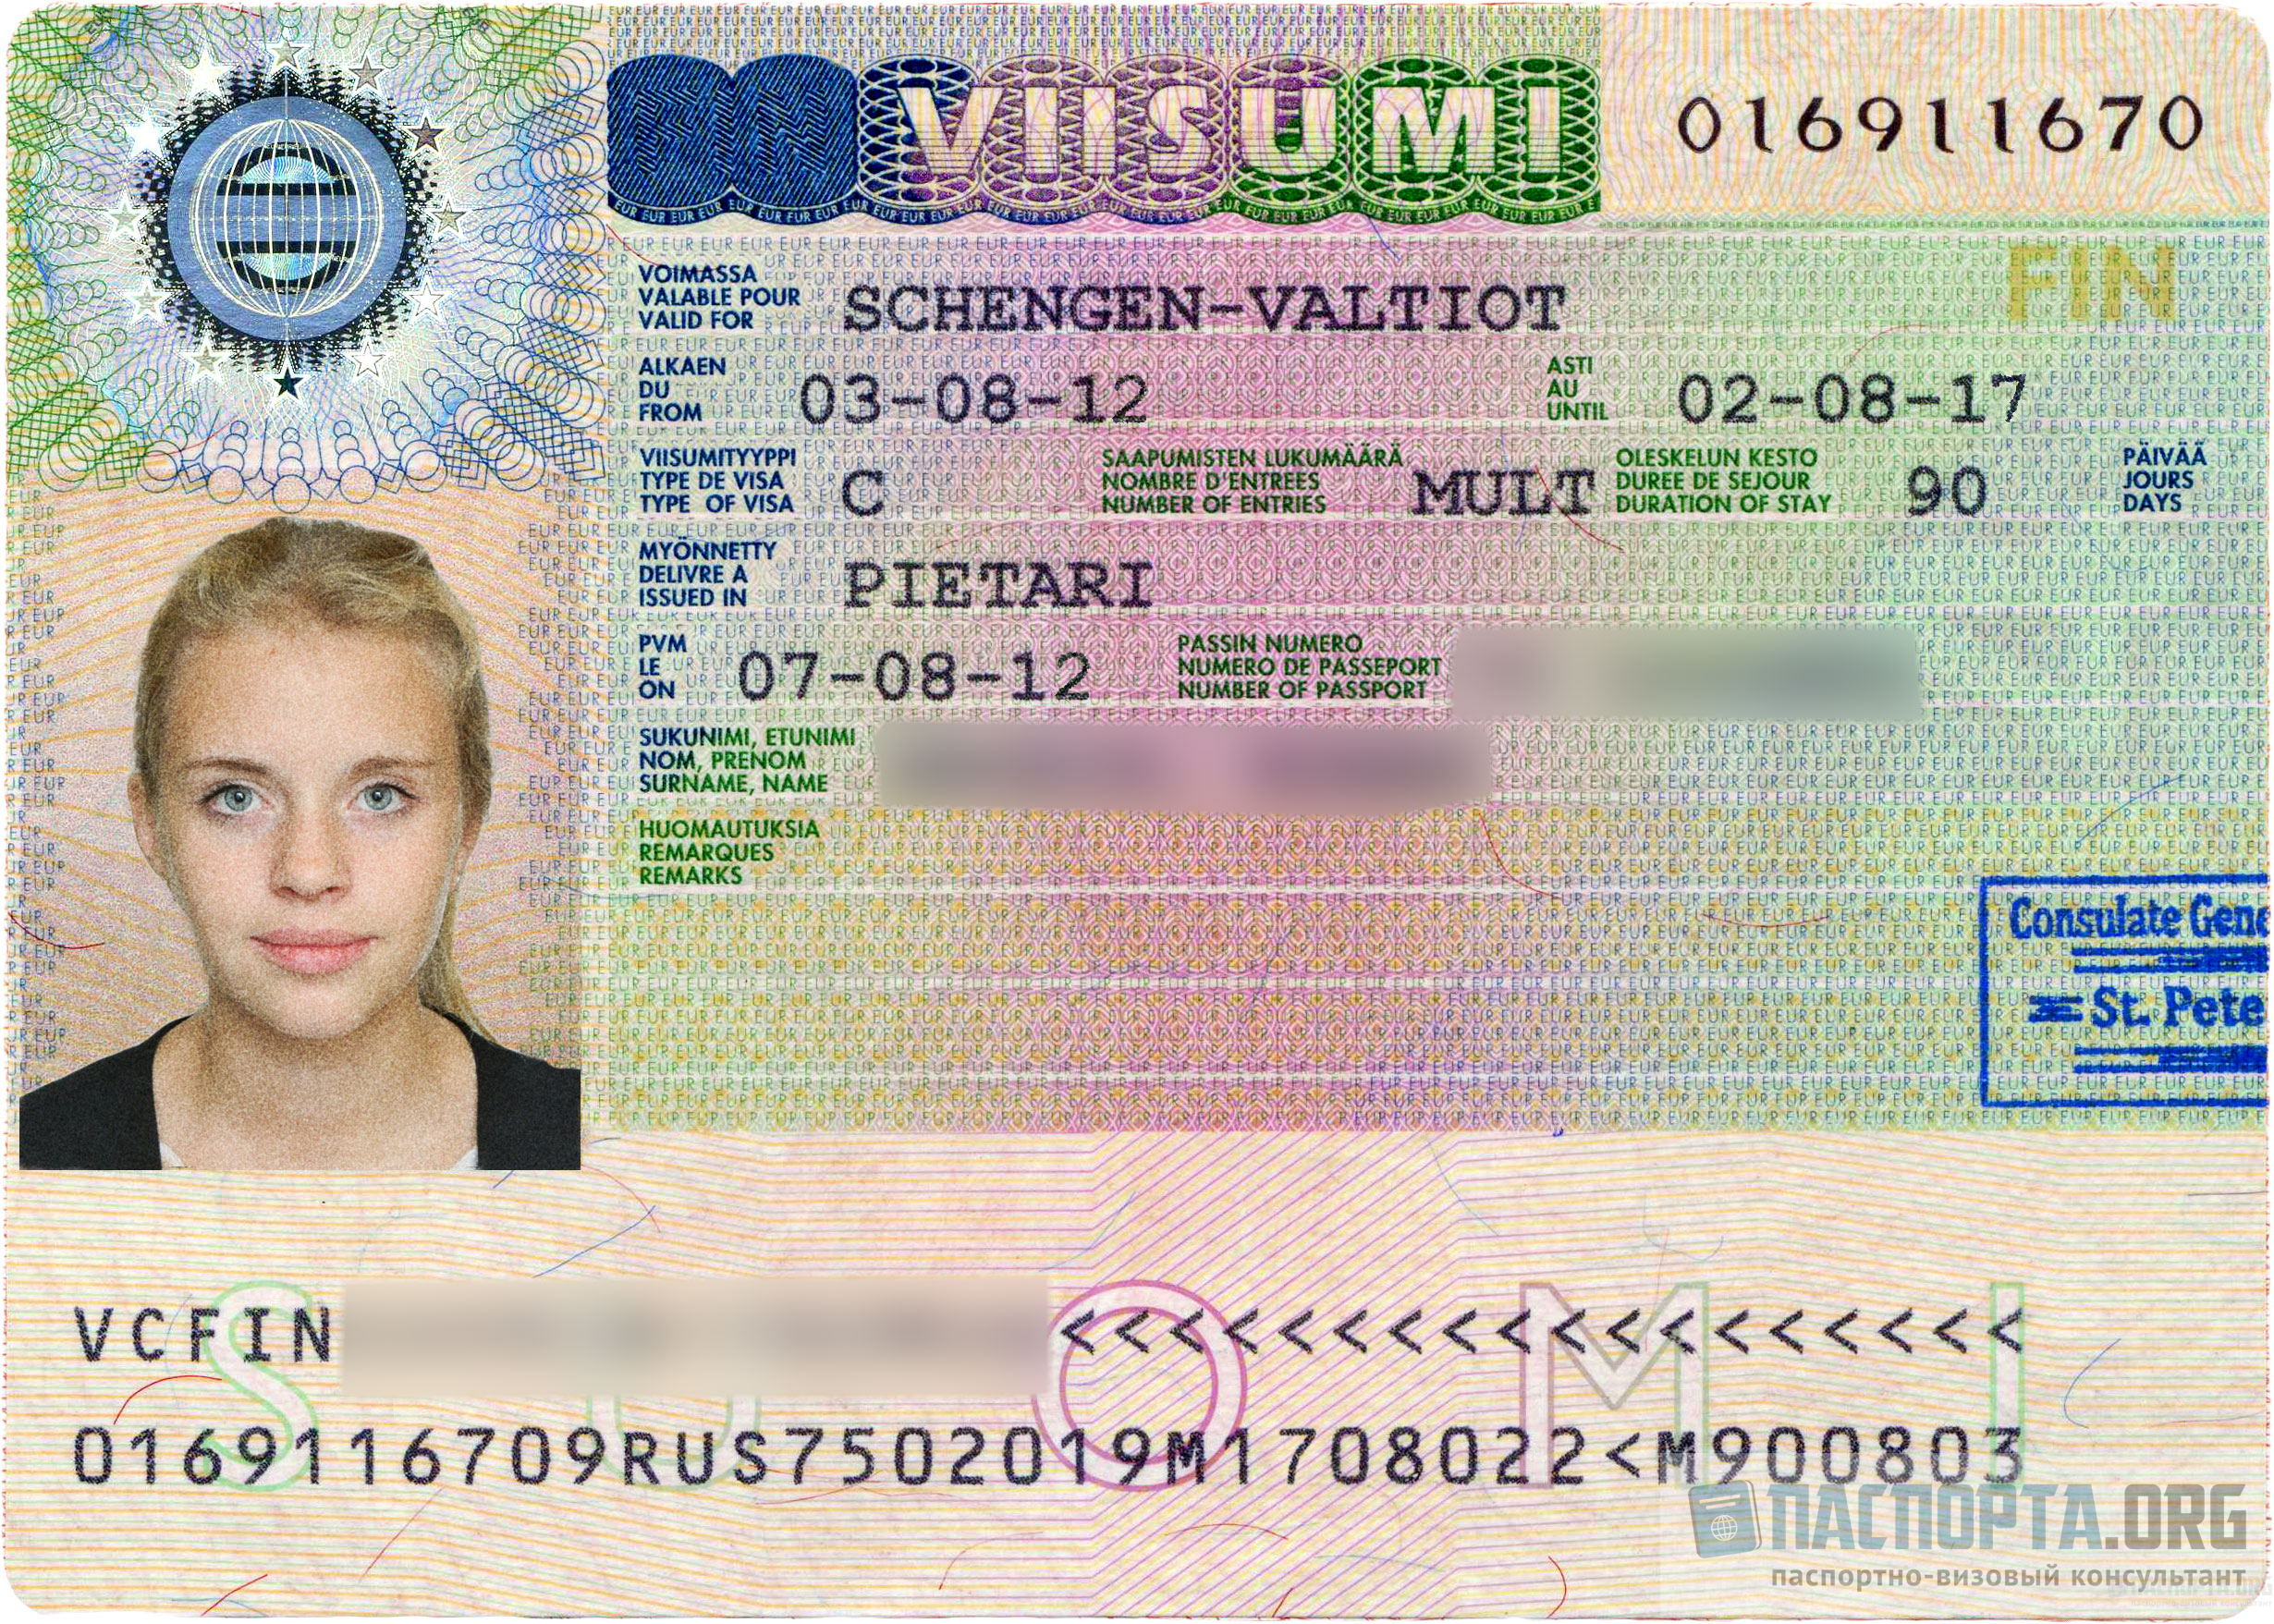 Посетить Болгарию без оформления визы можно при наличии действующей шенгенской визы любого типа.